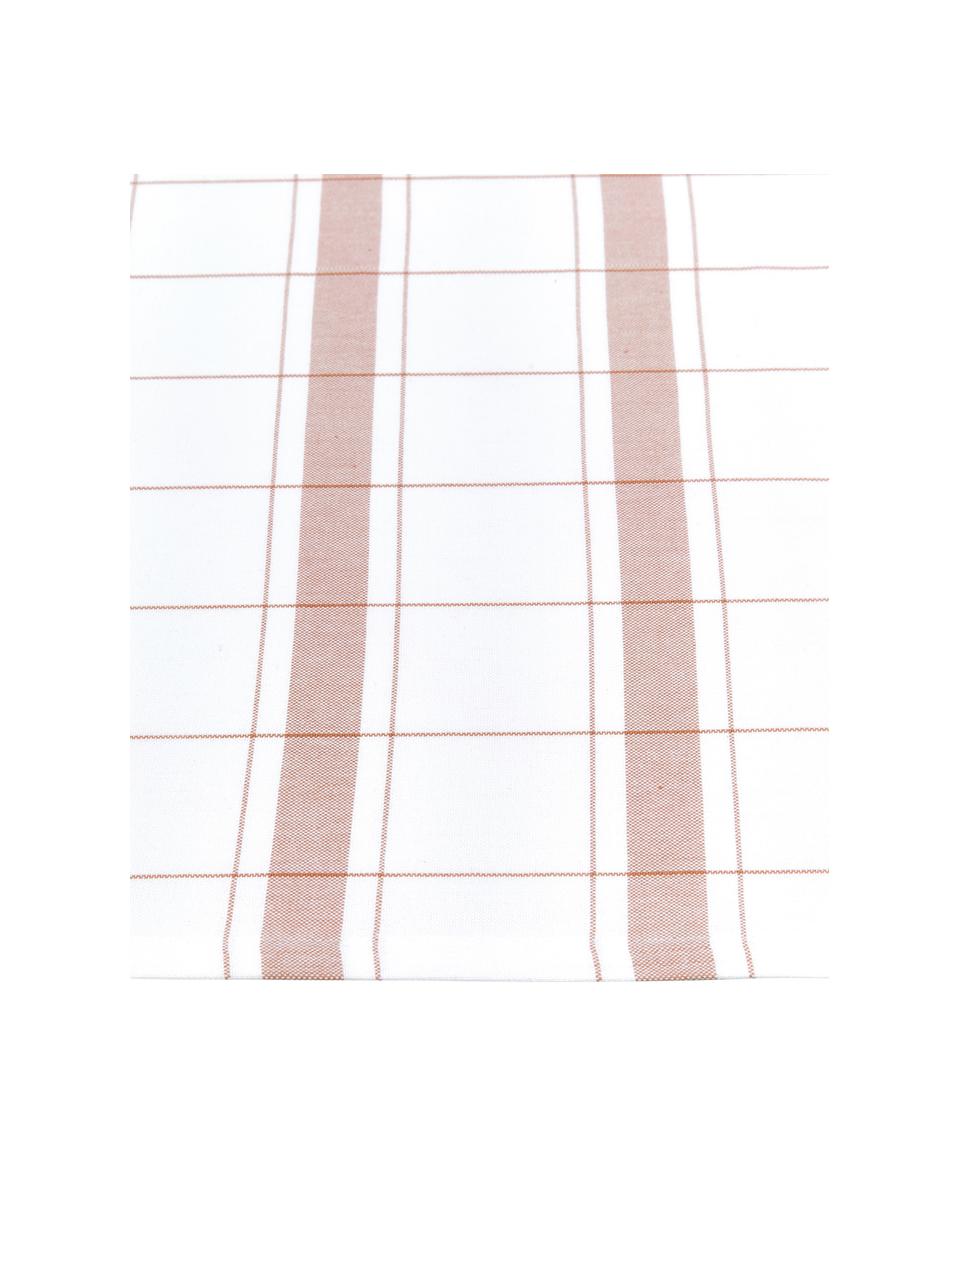 Ręcznik kuchenny z bawełny Halida, 2 szt., 100% bawełna, Biały, nugatowy brązowy, S 55 x D 75 cm